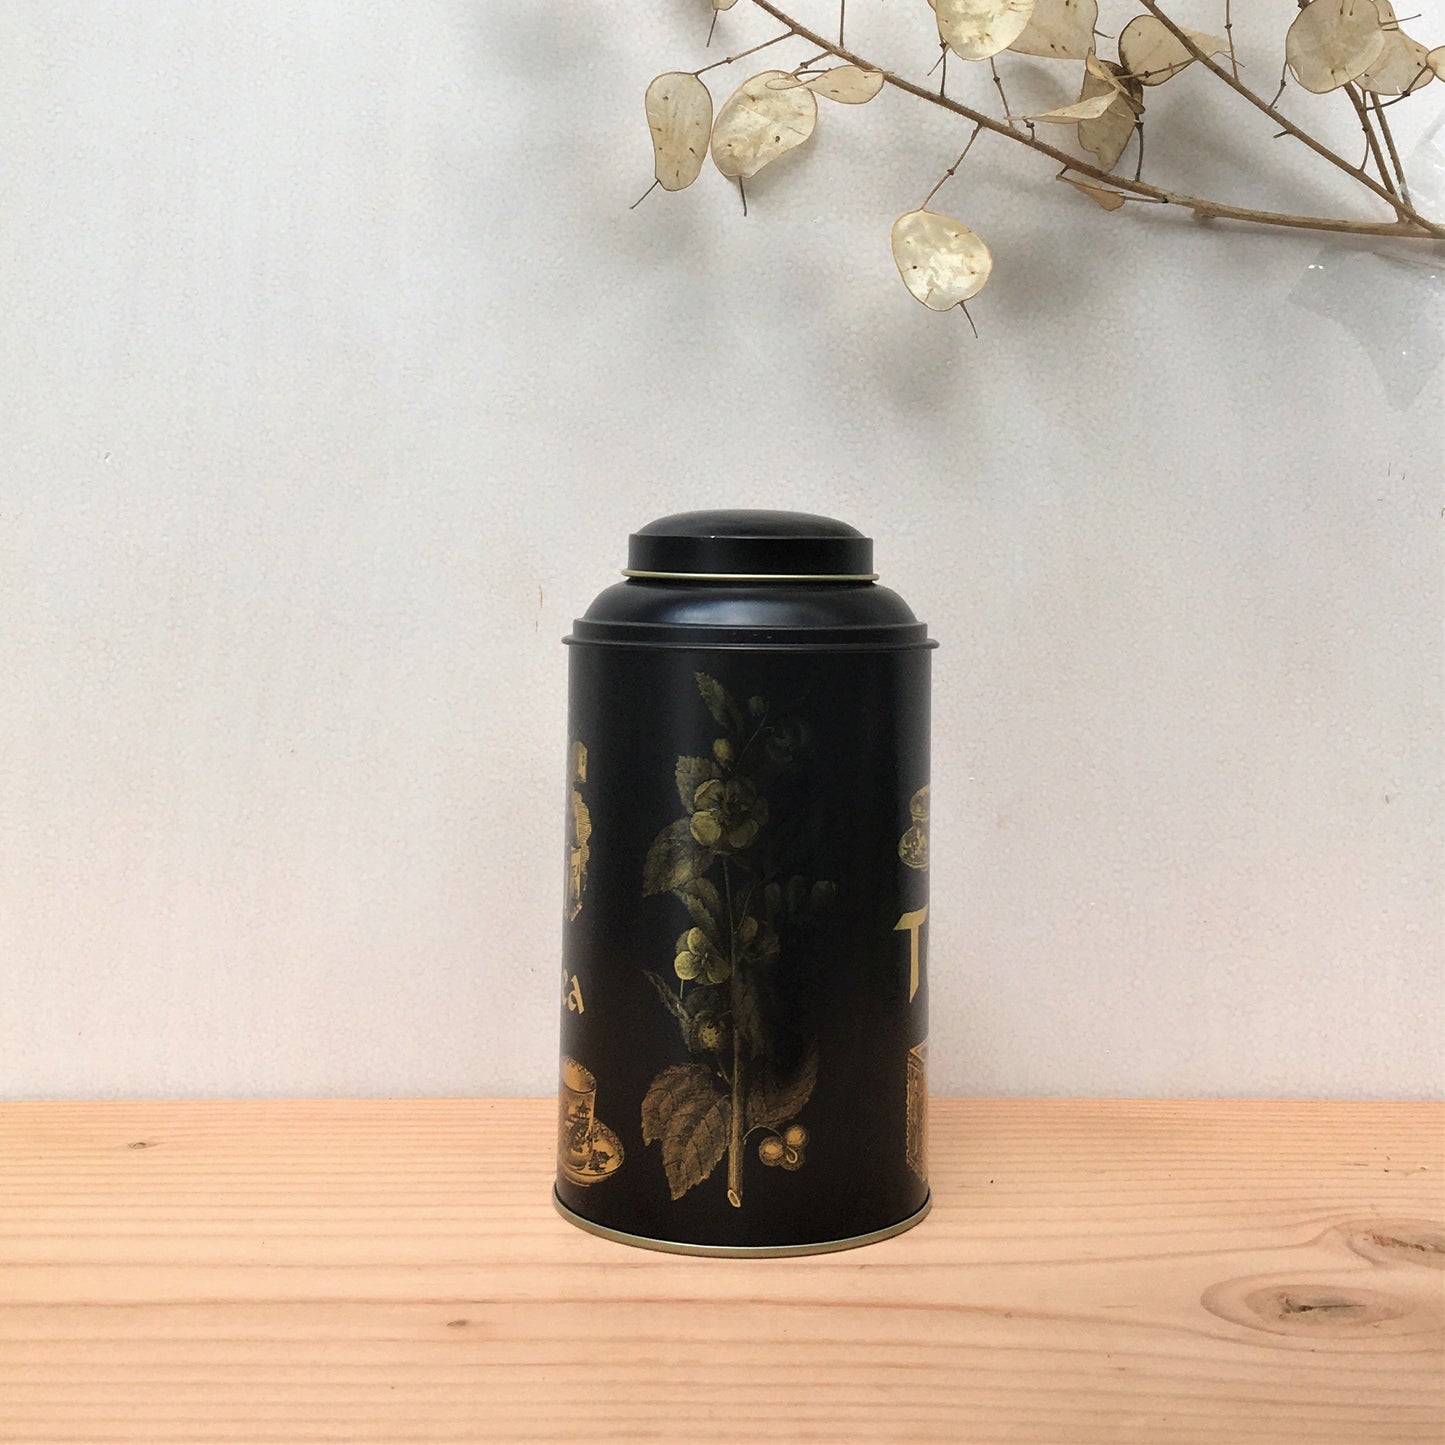 Tea Memory Tin (150g-200g)